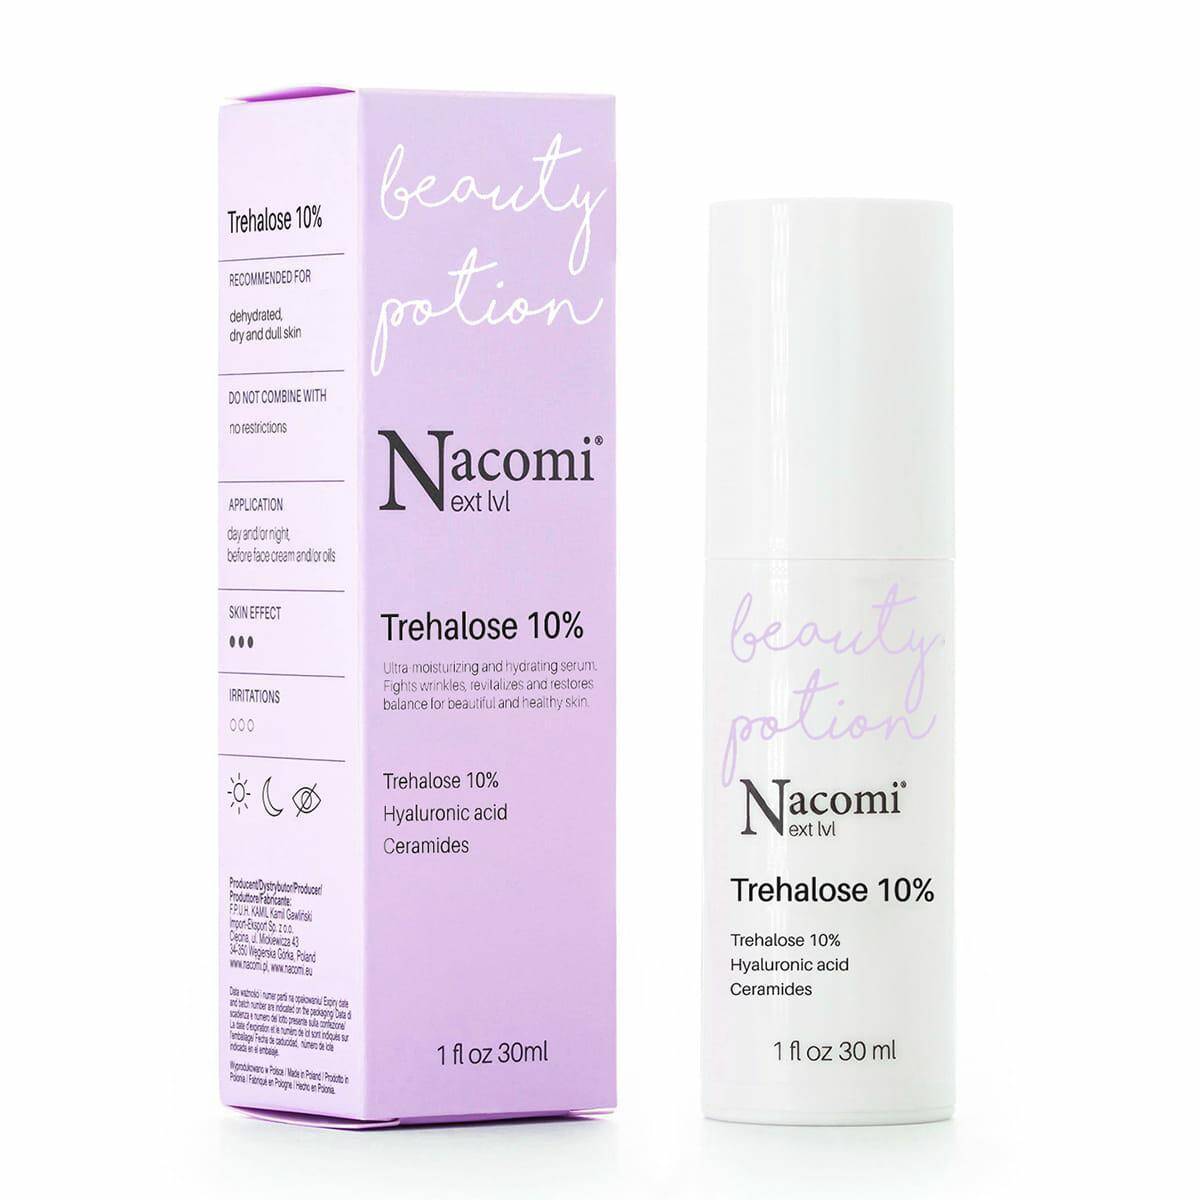 Nacomi next lvl serum Trehalose 10% 30ml